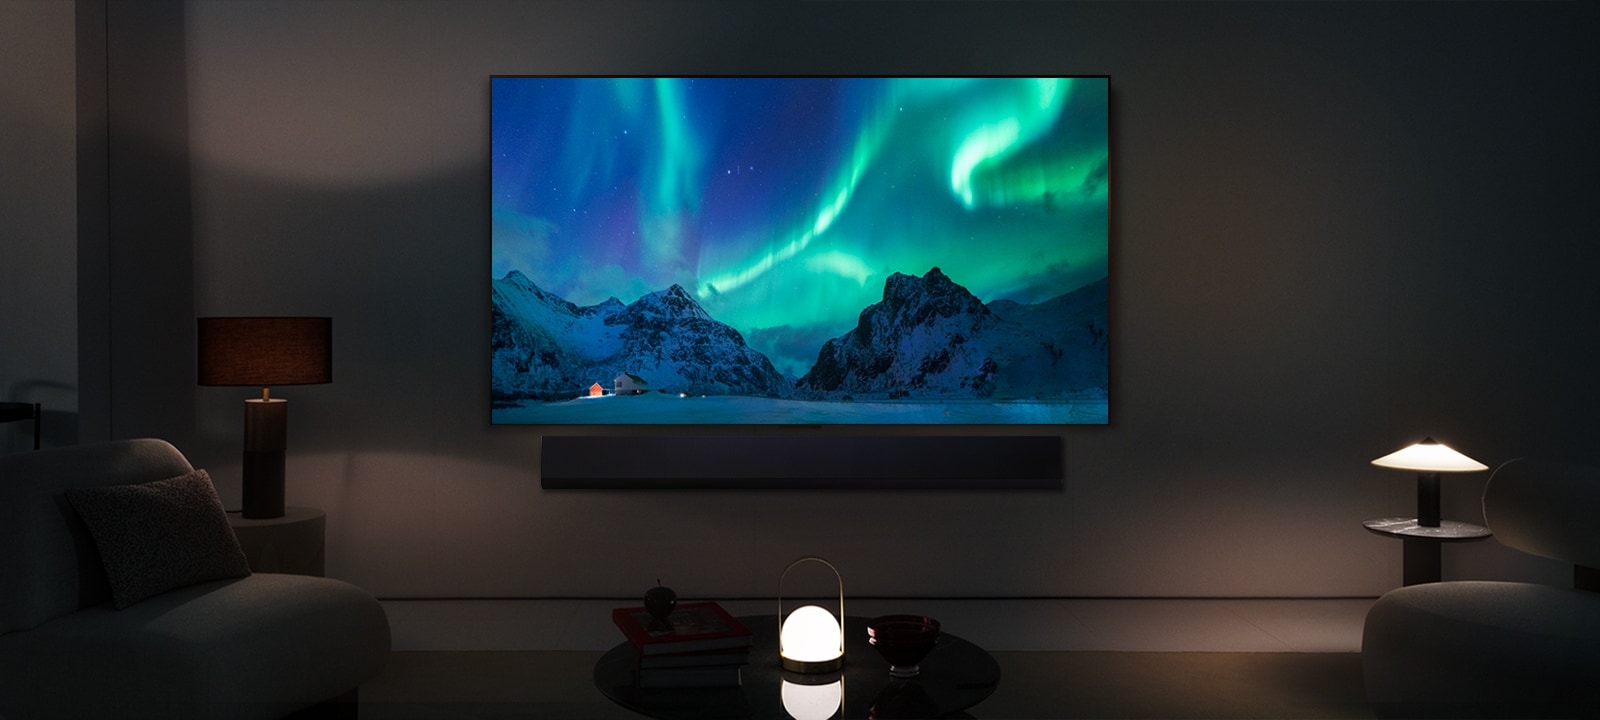 LG OLED y una barra de sonido LG en un espacio moderno durante la noche. La imagen de la pantalla de aurora boreal se muestra con los niveles de brillo ideales.